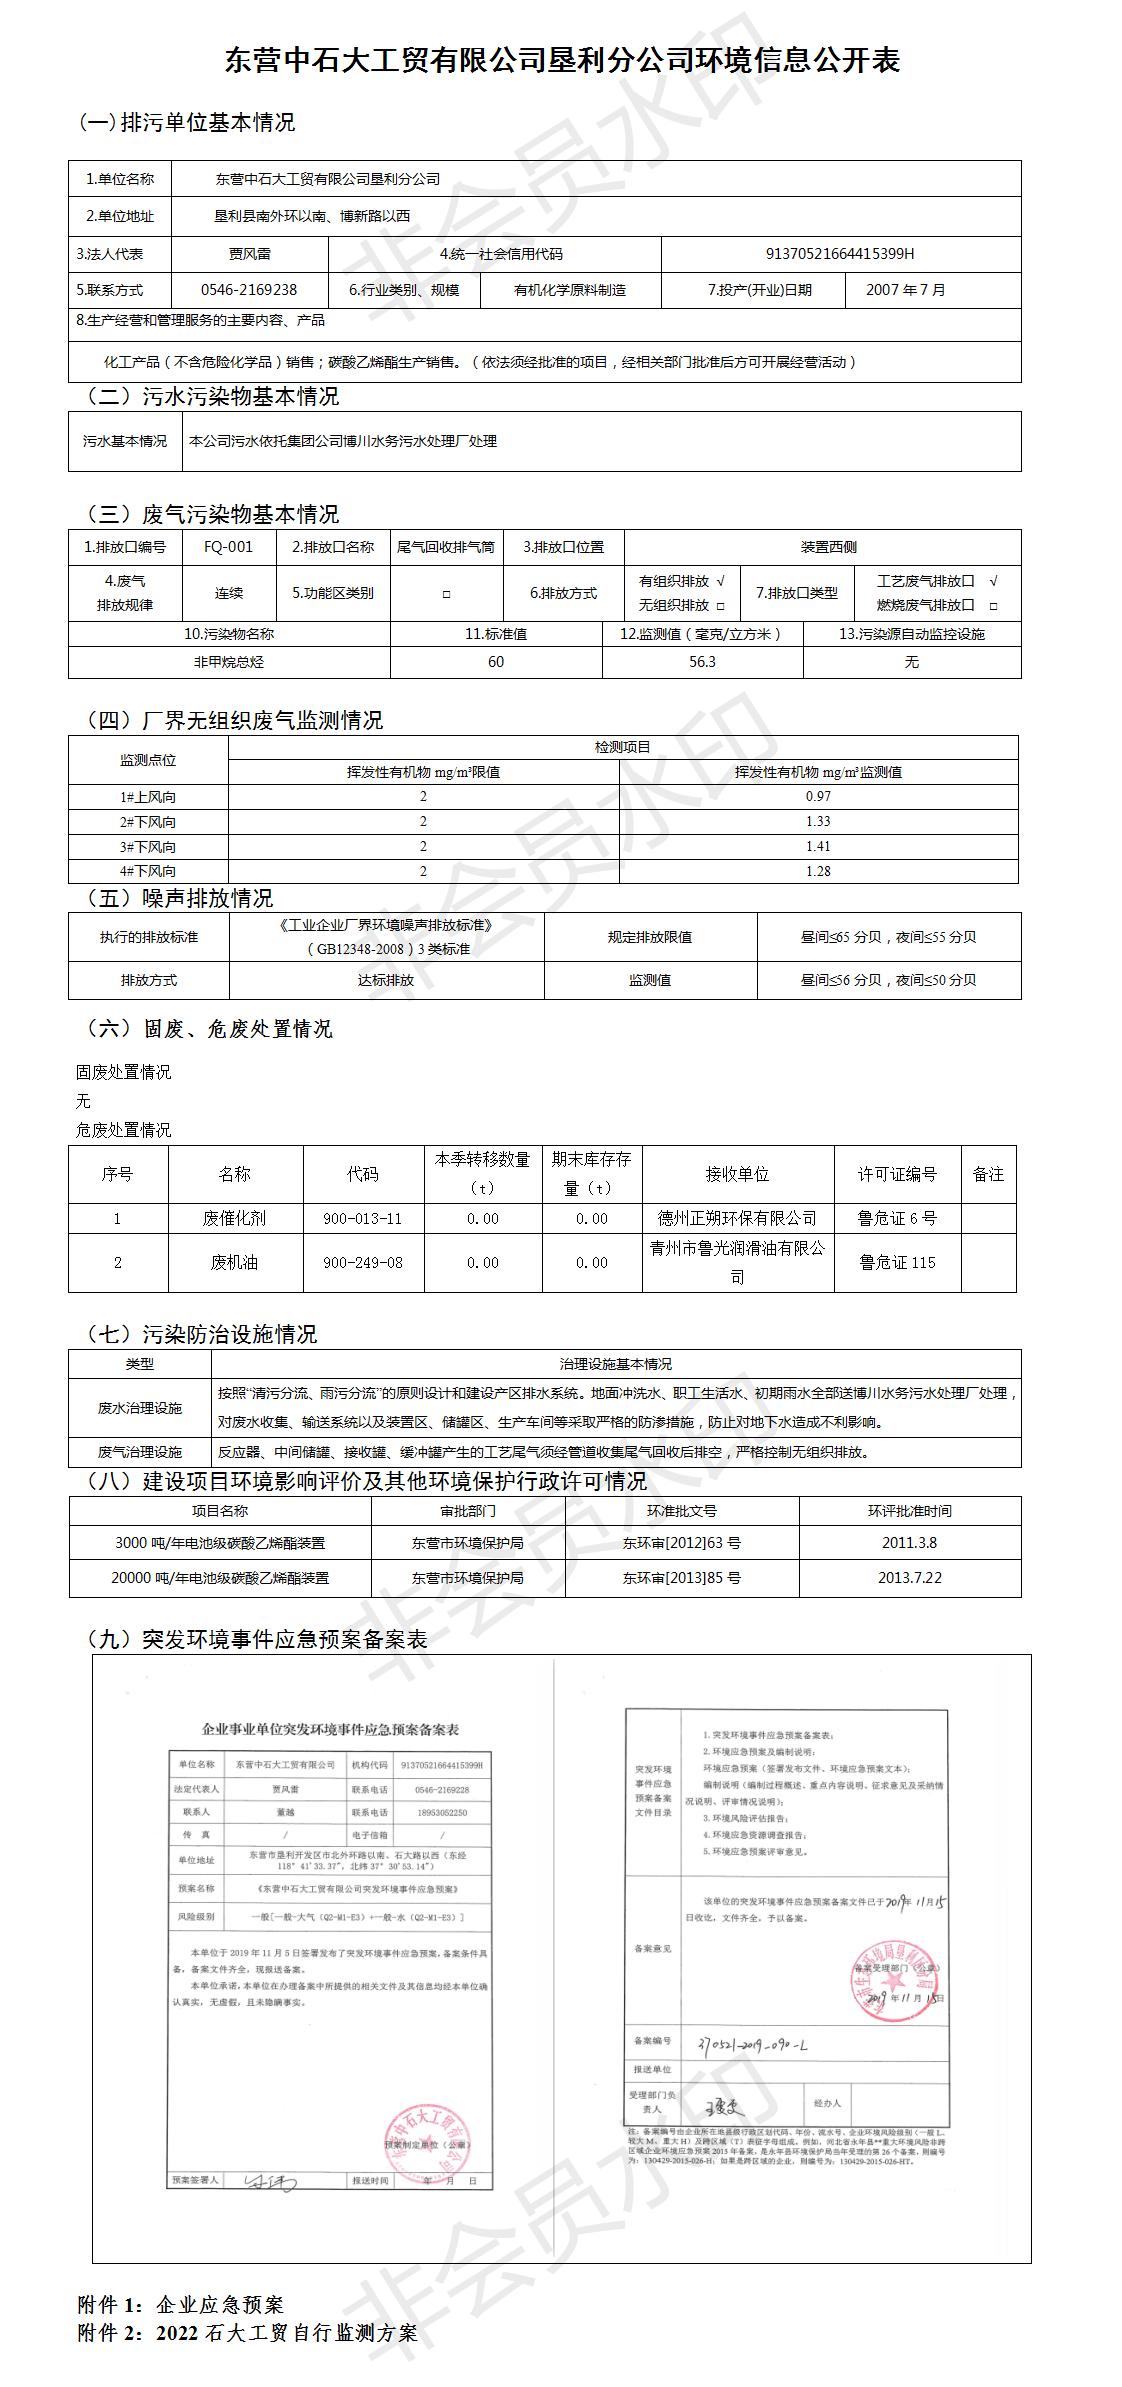 东营中石大工贸有限公司垦利分公司环境信息公开表 （2022第一季度）.jpg